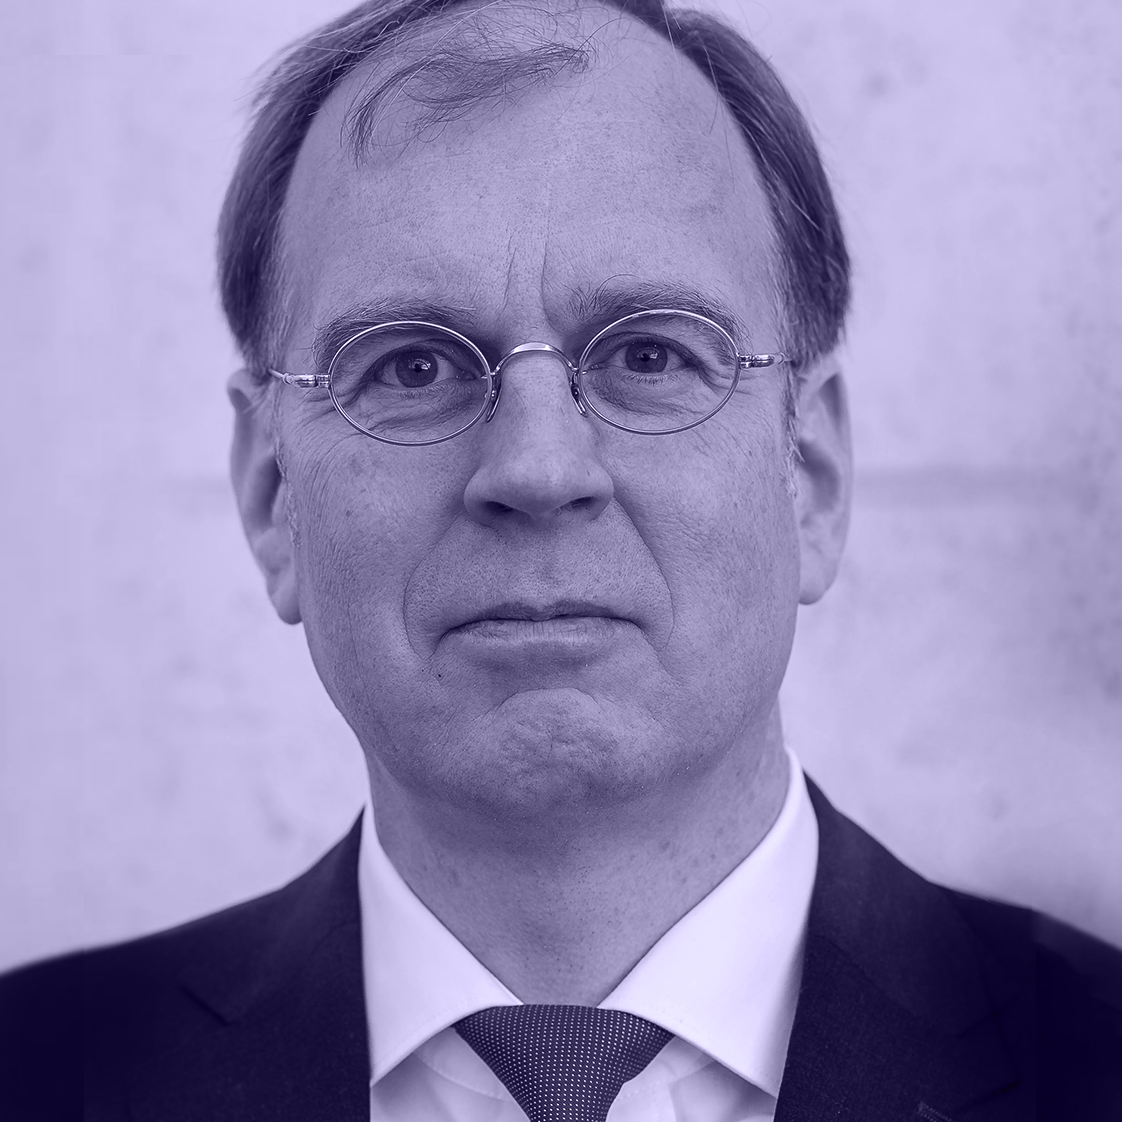 Thomas Spaeing, Berufsverband der Datenschutzbeauftragten Deutschlands e.V.